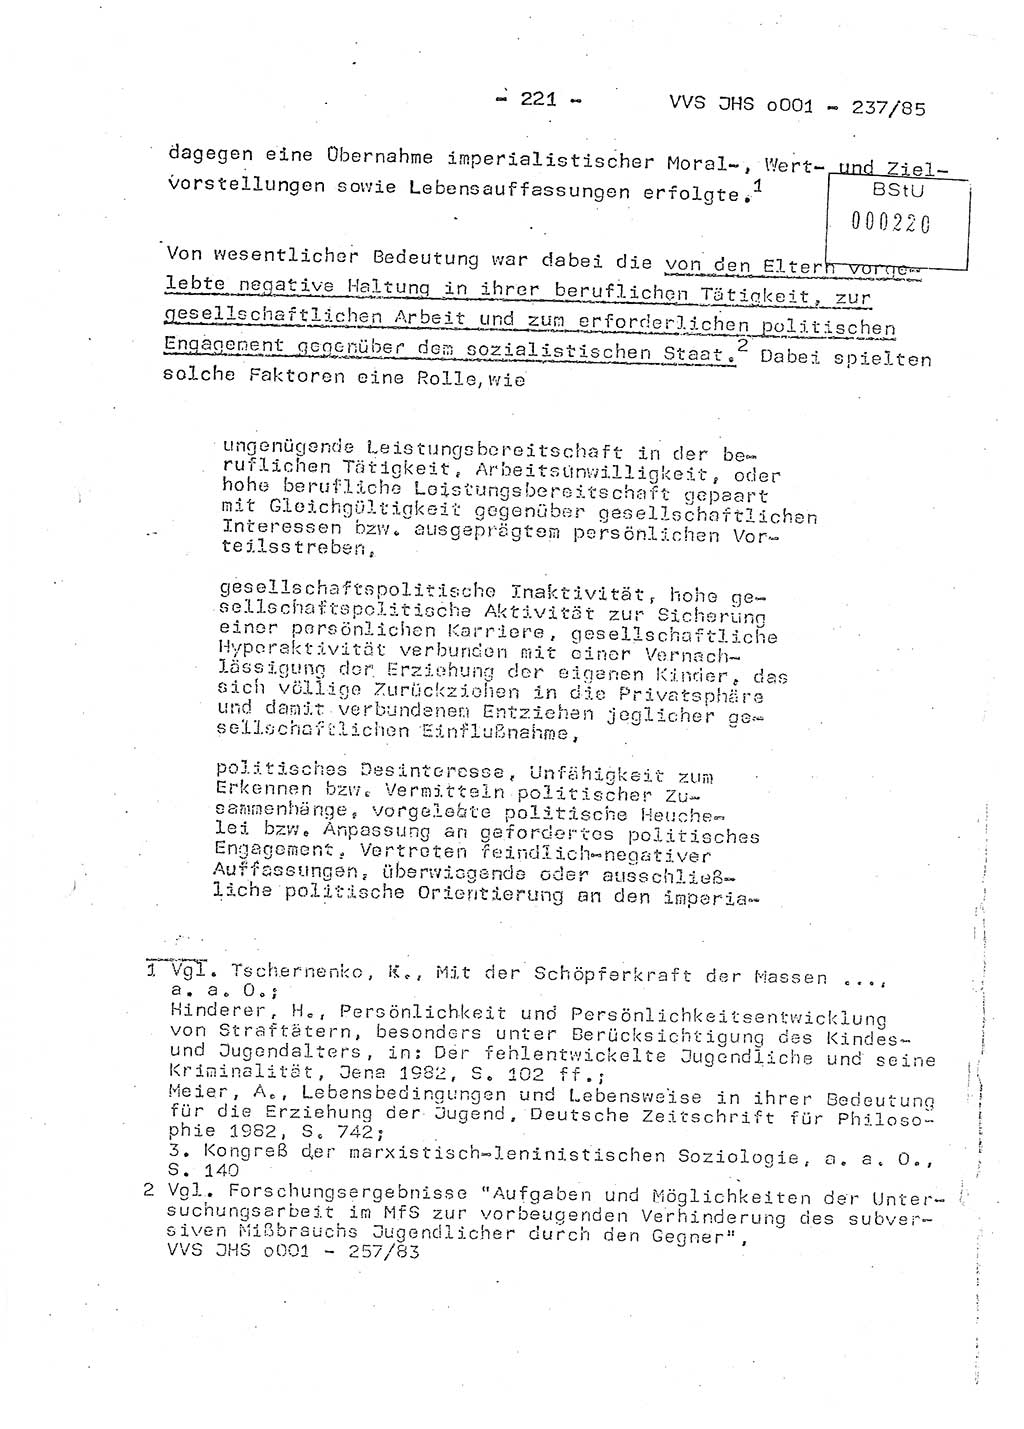 Dissertation Oberstleutnant Peter Jakulski (JHS), Oberstleutnat Christian Rudolph (HA Ⅸ), Major Horst Böttger (ZMD), Major Wolfgang Grüneberg (JHS), Major Albert Meutsch (JHS), Ministerium für Staatssicherheit (MfS) [Deutsche Demokratische Republik (DDR)], Juristische Hochschule (JHS), Vertrauliche Verschlußsache (VVS) o001-237/85, Potsdam 1985, Seite 221 (Diss. MfS DDR JHS VVS o001-237/85 1985, S. 221)